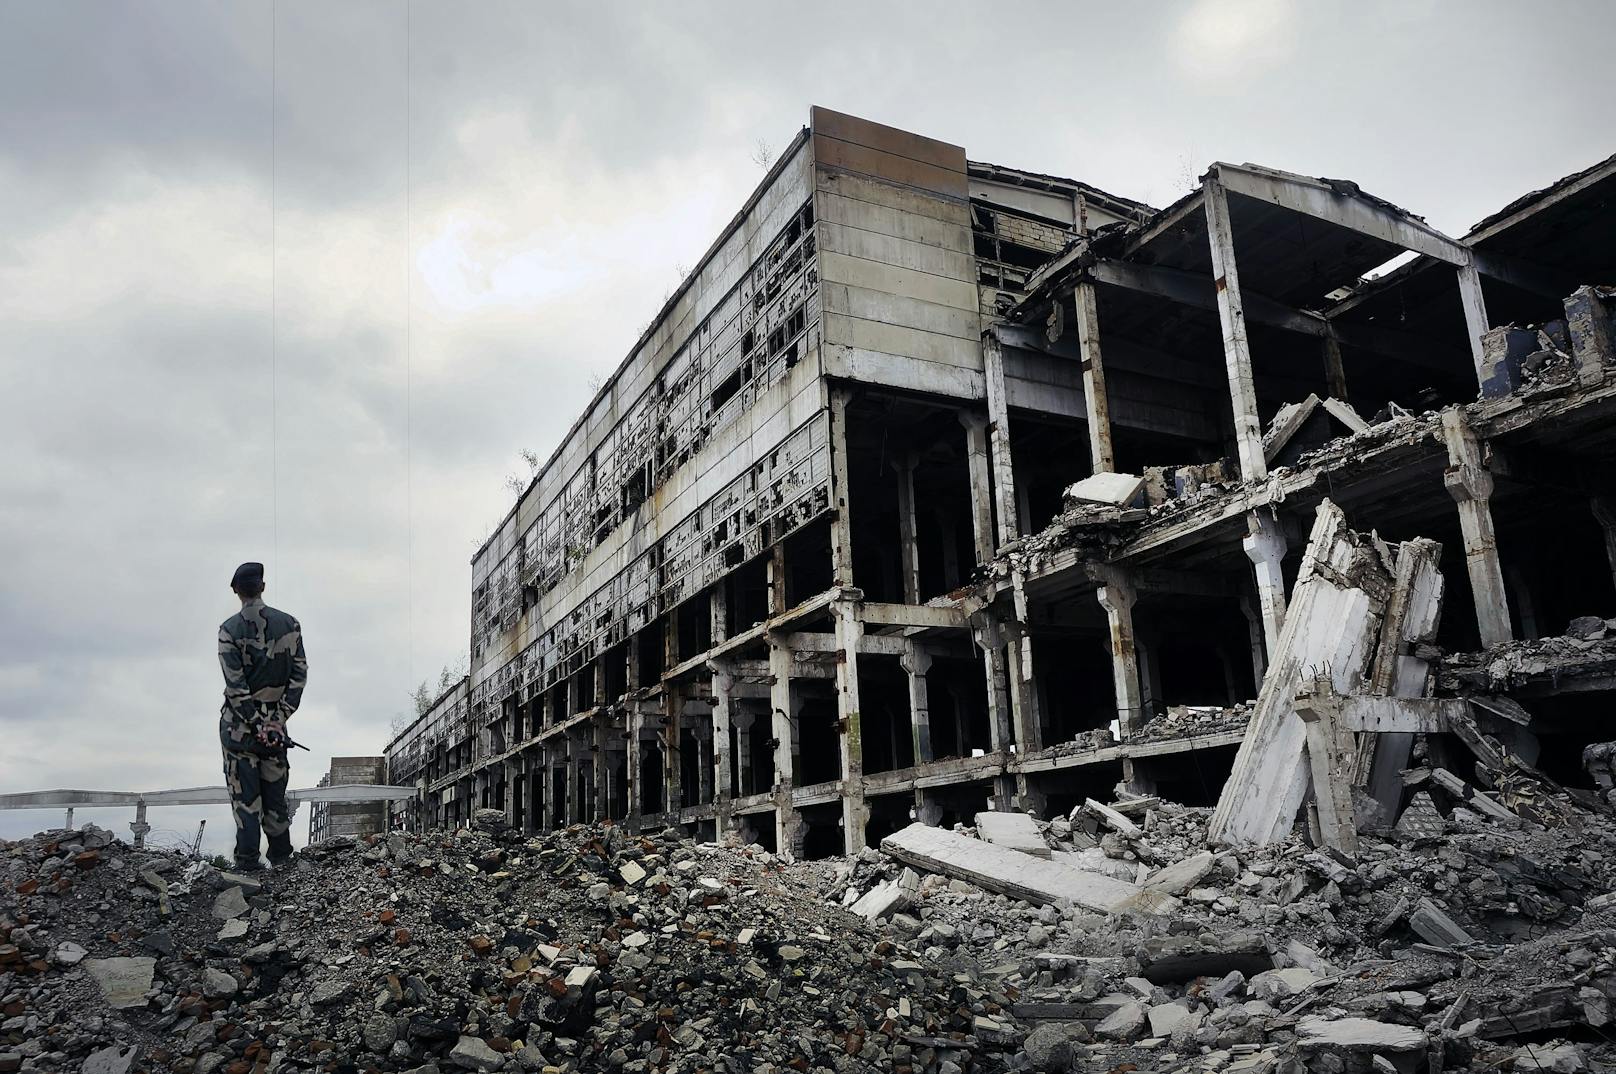 Das Ausmaß der Zerstörung in der umkämpften Region Donbass ist vielerorts groß.